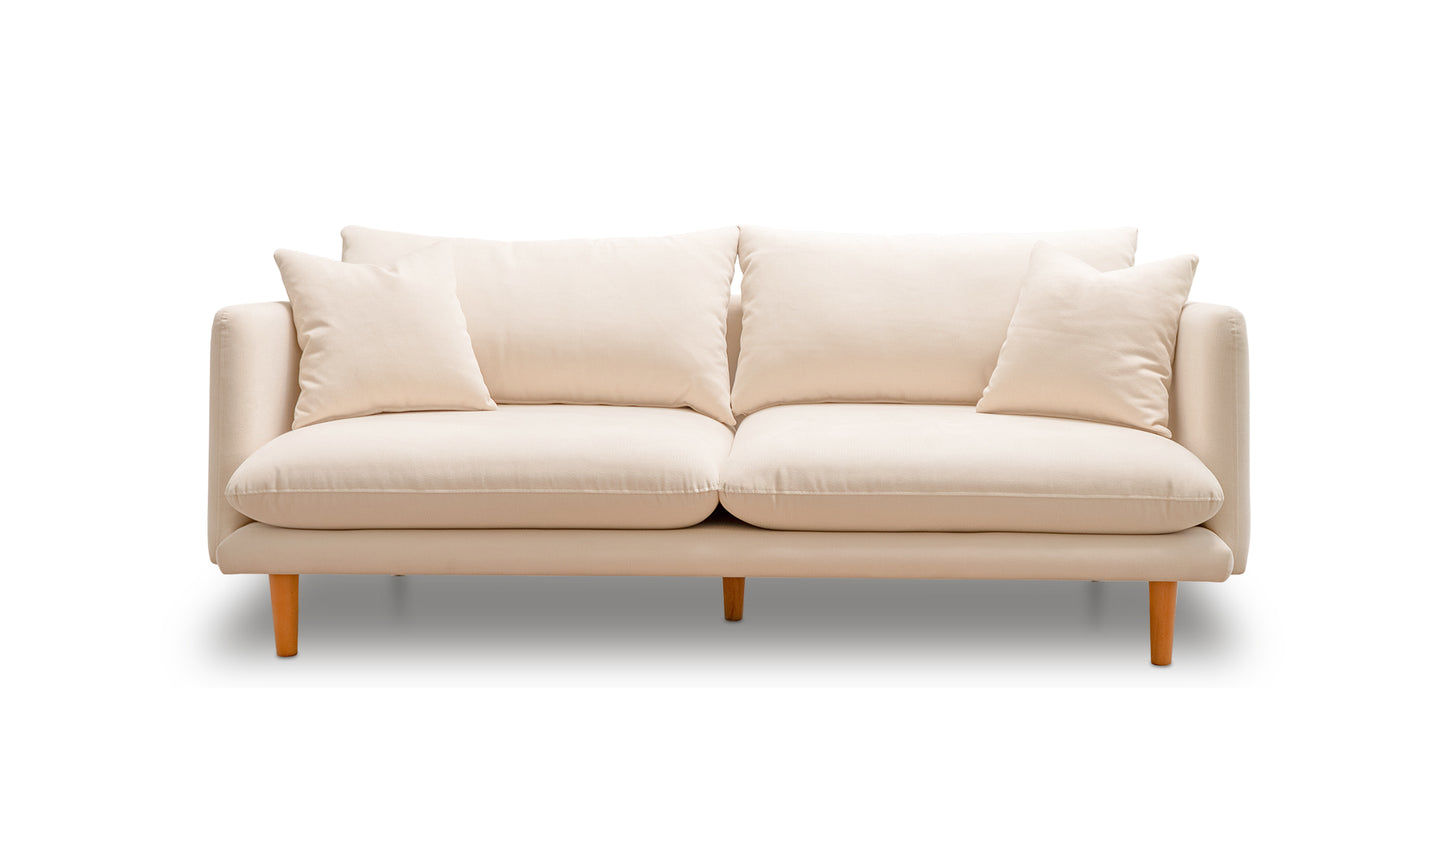 The Robin Sofa